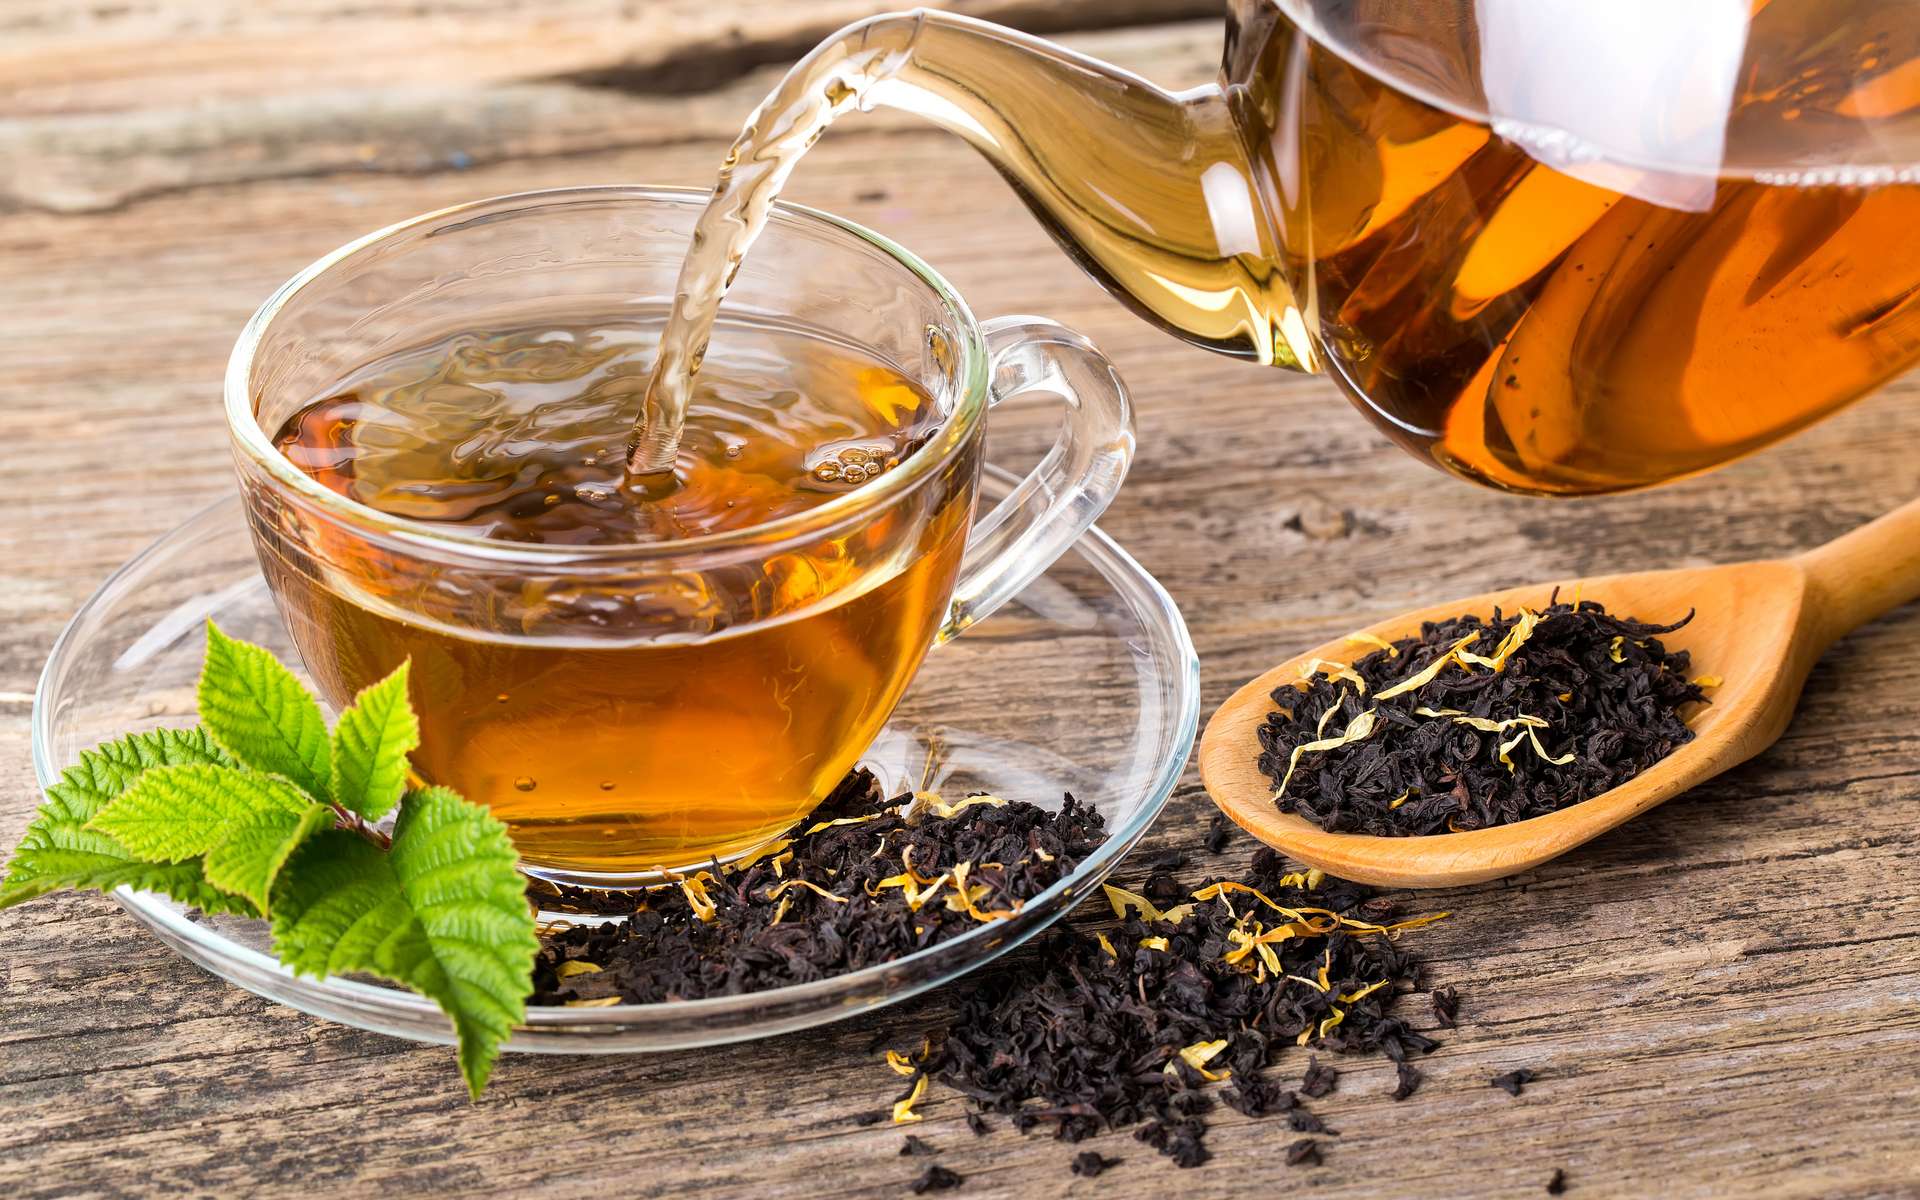 Boire du thé noir réduit la mortalité, selon une étude